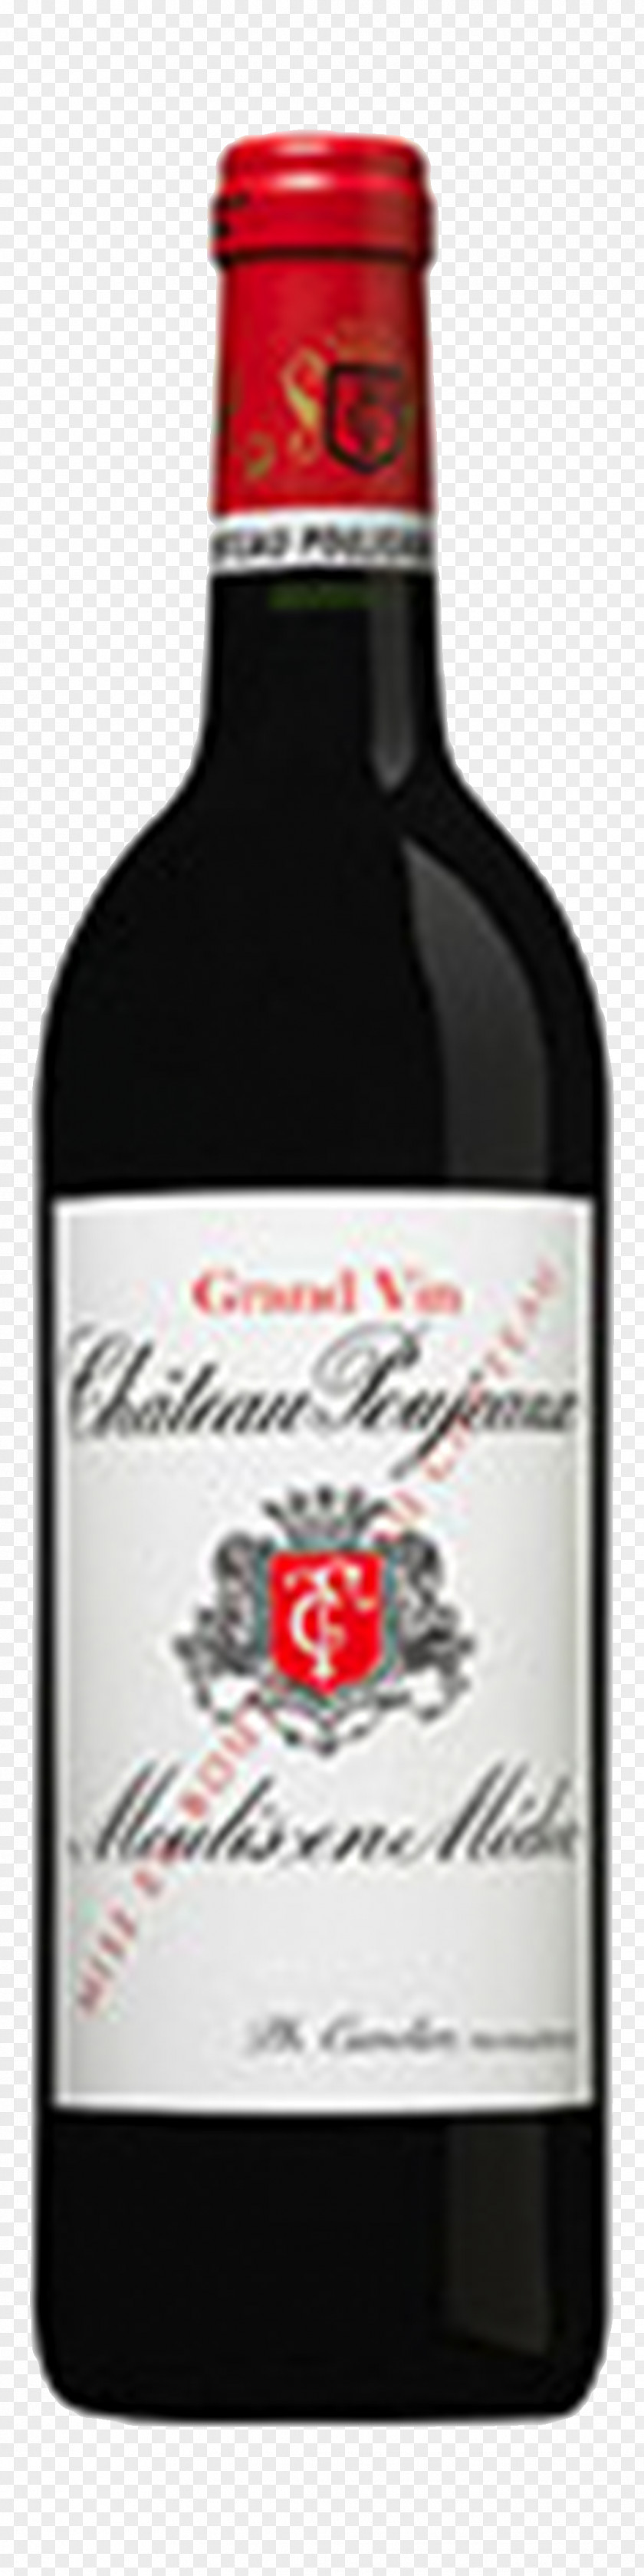 Wine Château Poujeaux Liqueur Hosanna Médoc PNG